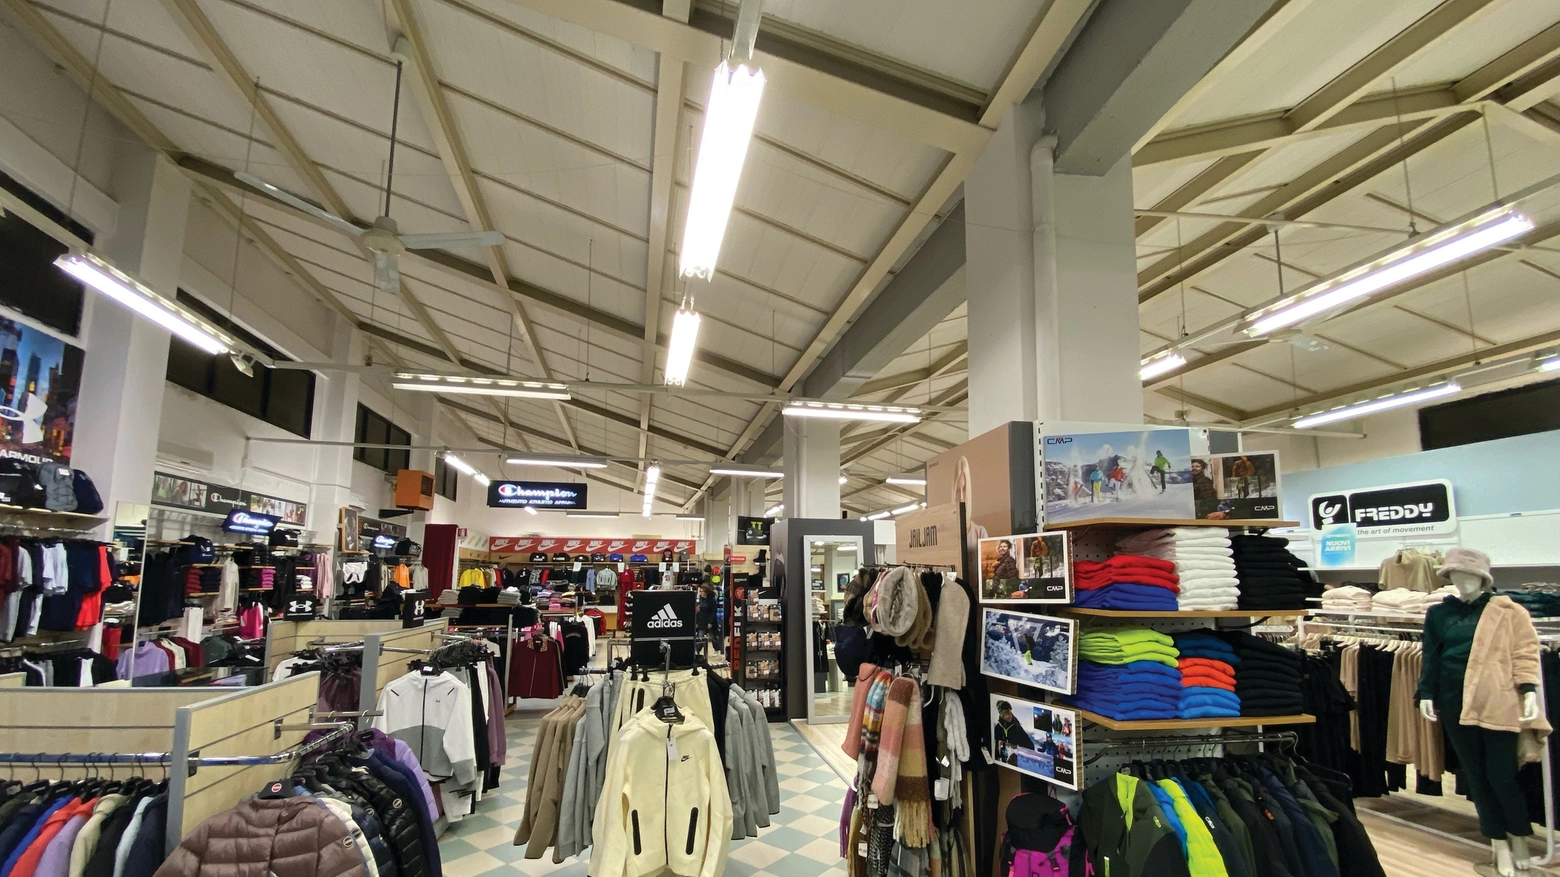 Esperienza / Lo storico negozio di Pisa, da oltre 45 anni, offre prodotti di valore a prezzi competitivi